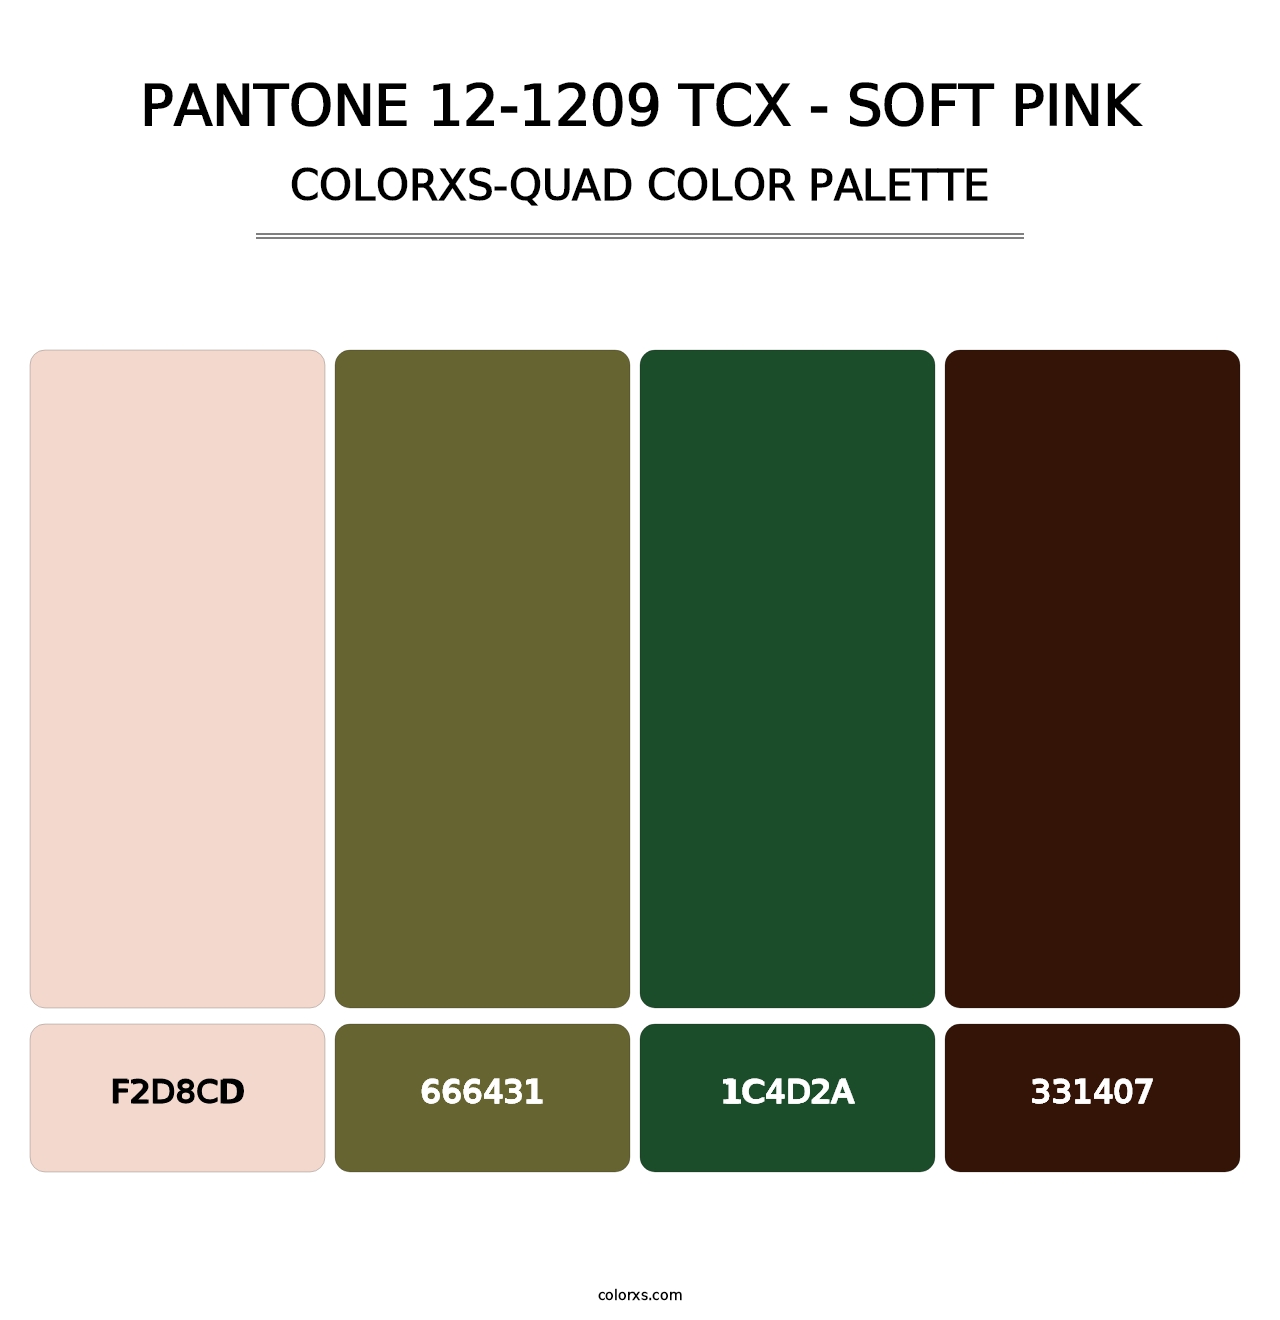 PANTONE 12-1209 TCX - Soft Pink - Colorxs Quad Palette